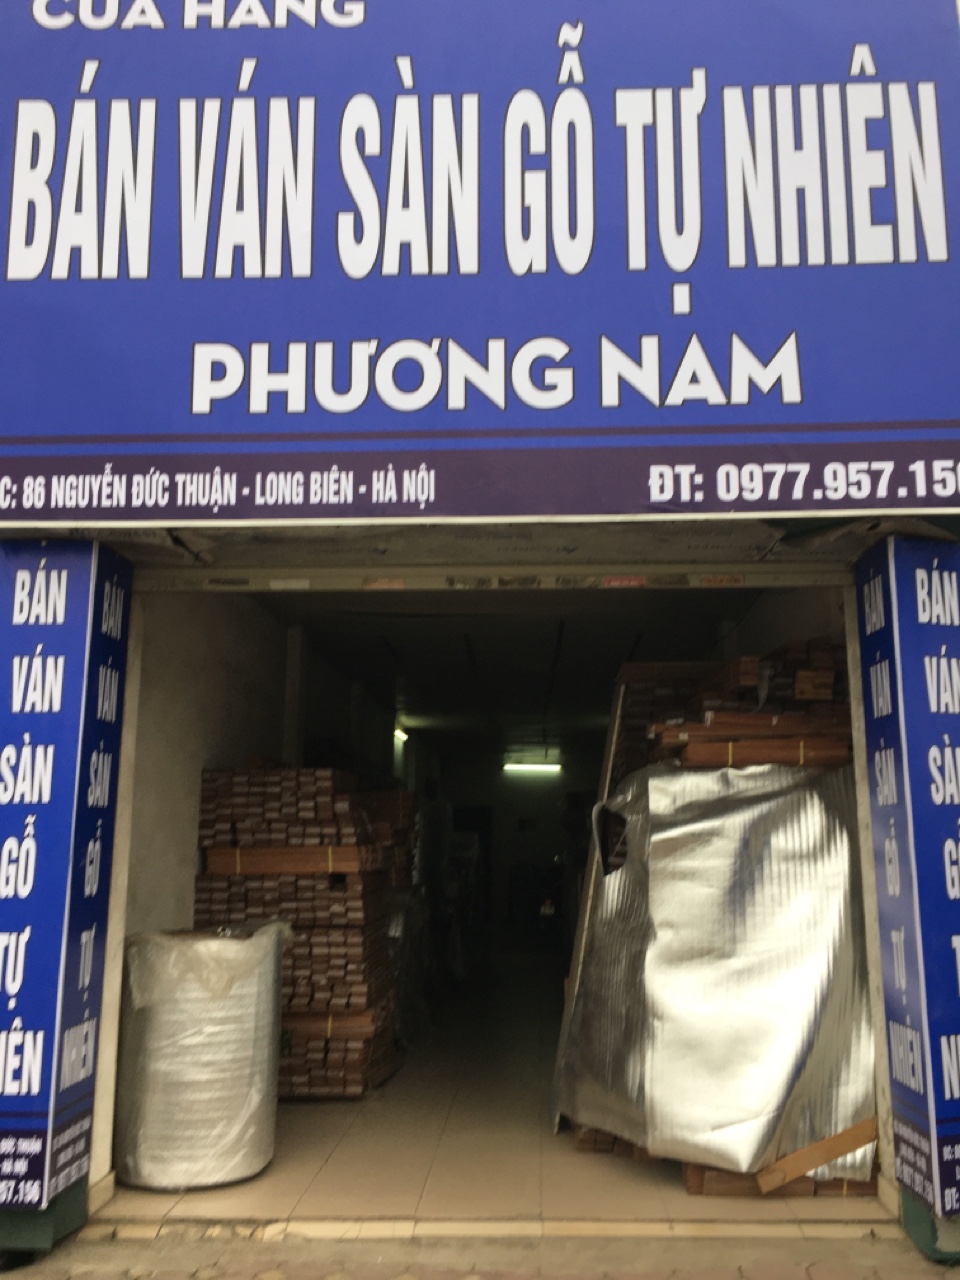 Nhận lắp đặt sàn gỗ tự nhiên , gỗ công nghiệp giá rẻ hot nhất Hà Nội